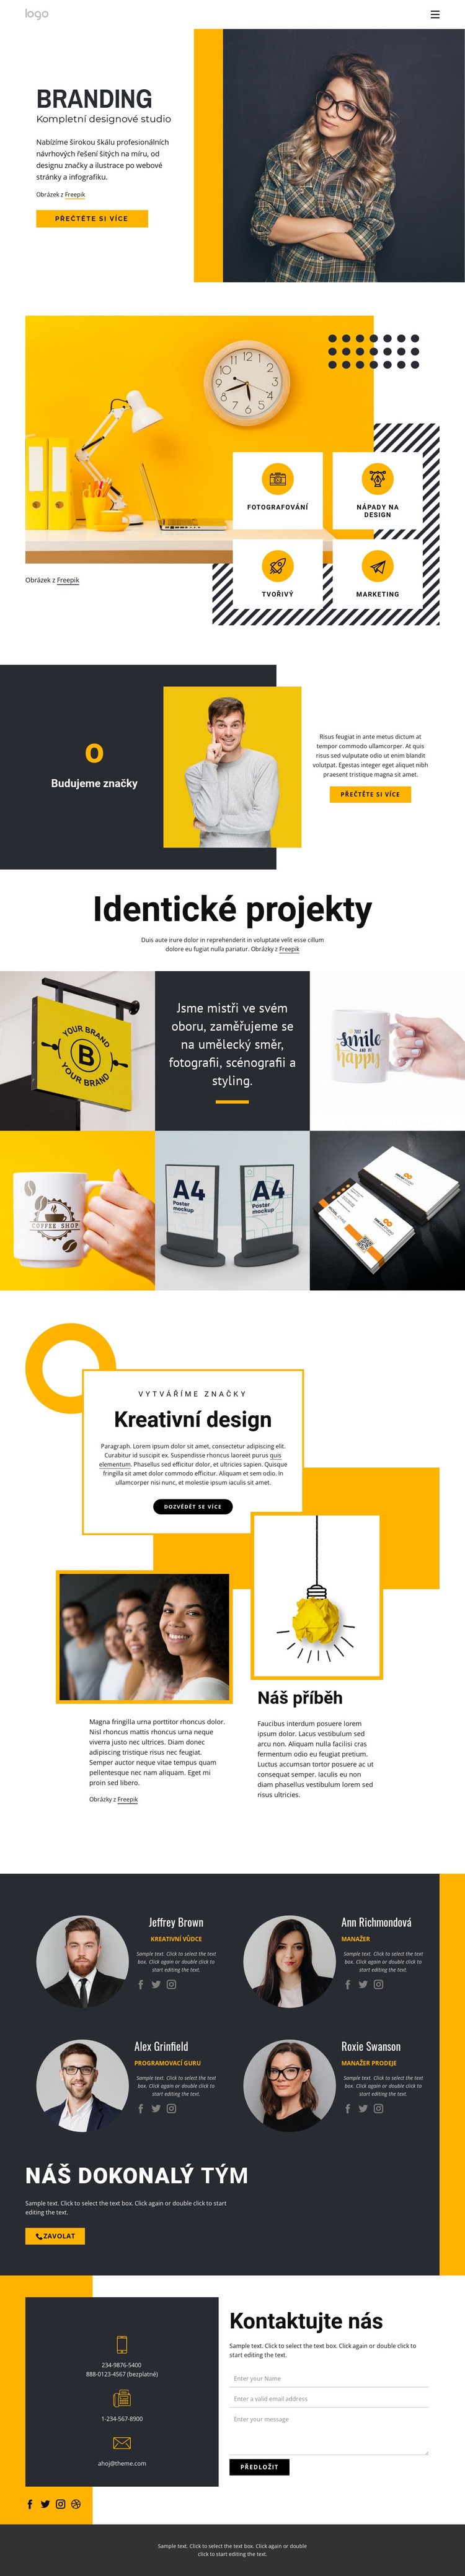 Full-service design studio Webový design